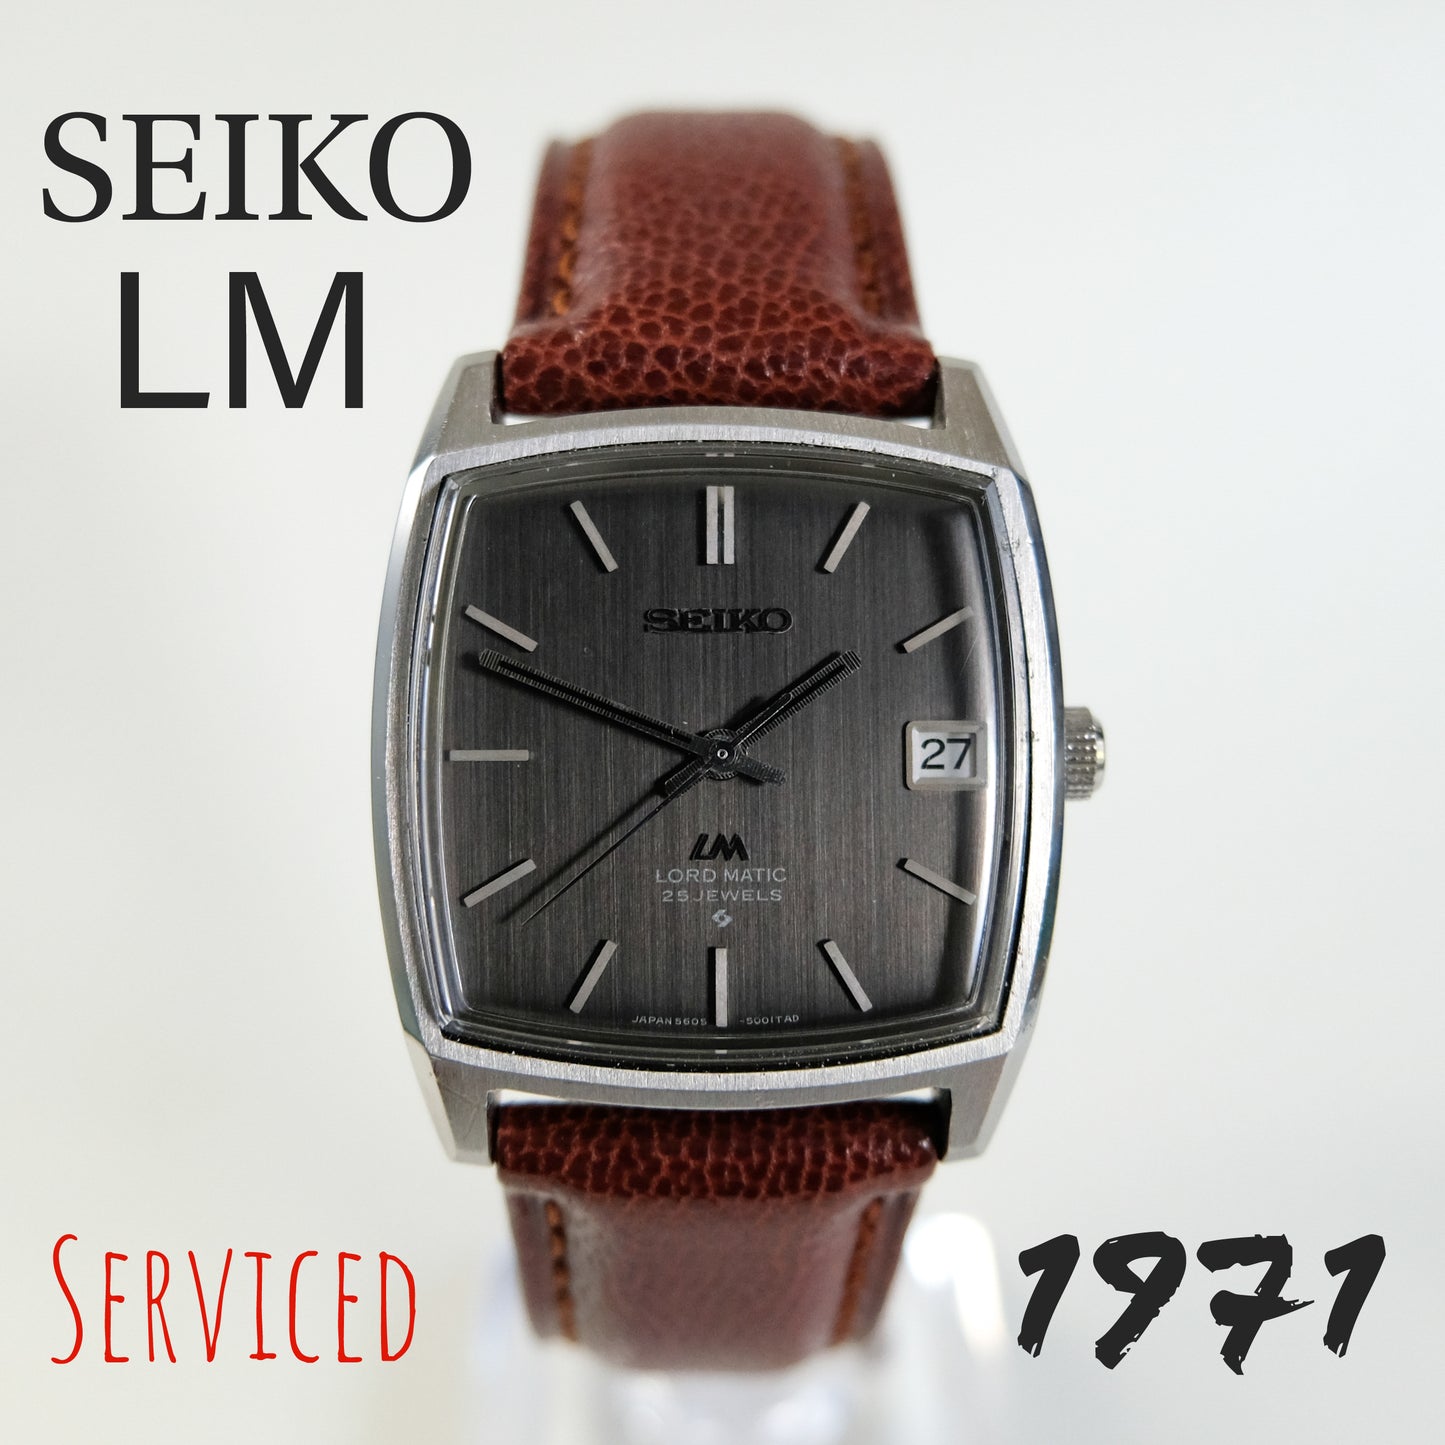 1971 Seiko LM 5606-5000